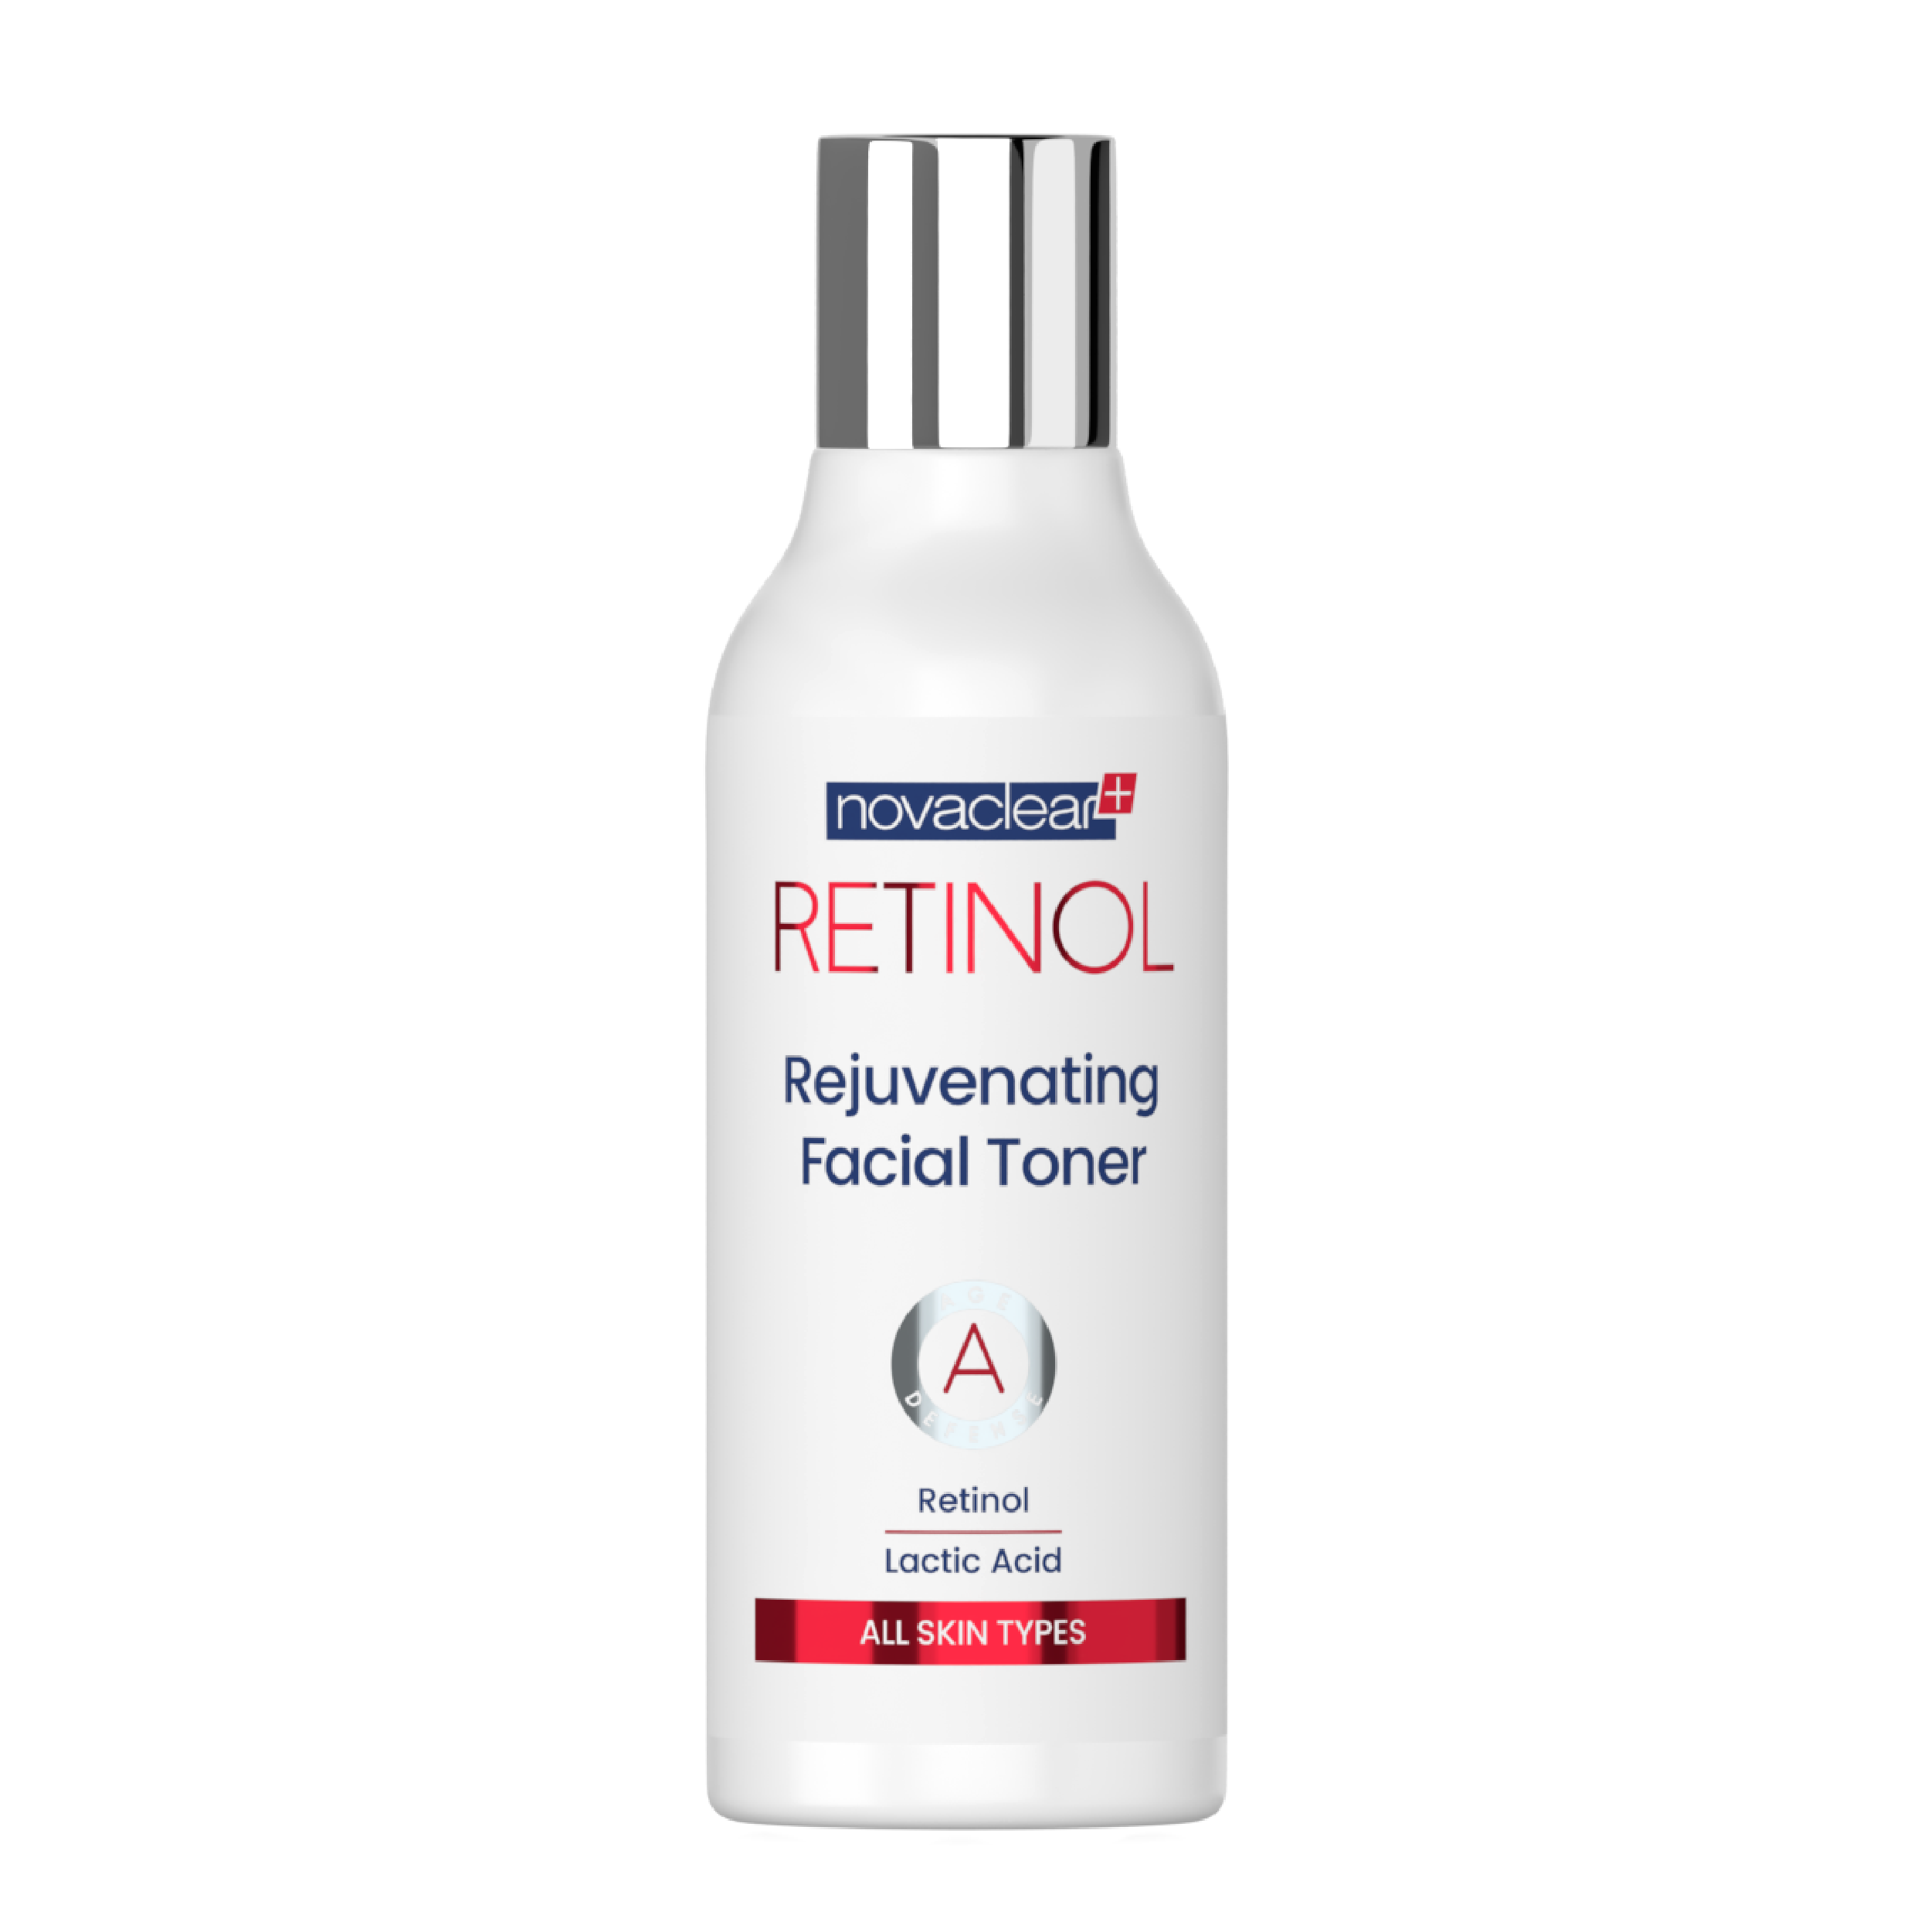 novaclear-retinol-rejuvenating-facial-toner